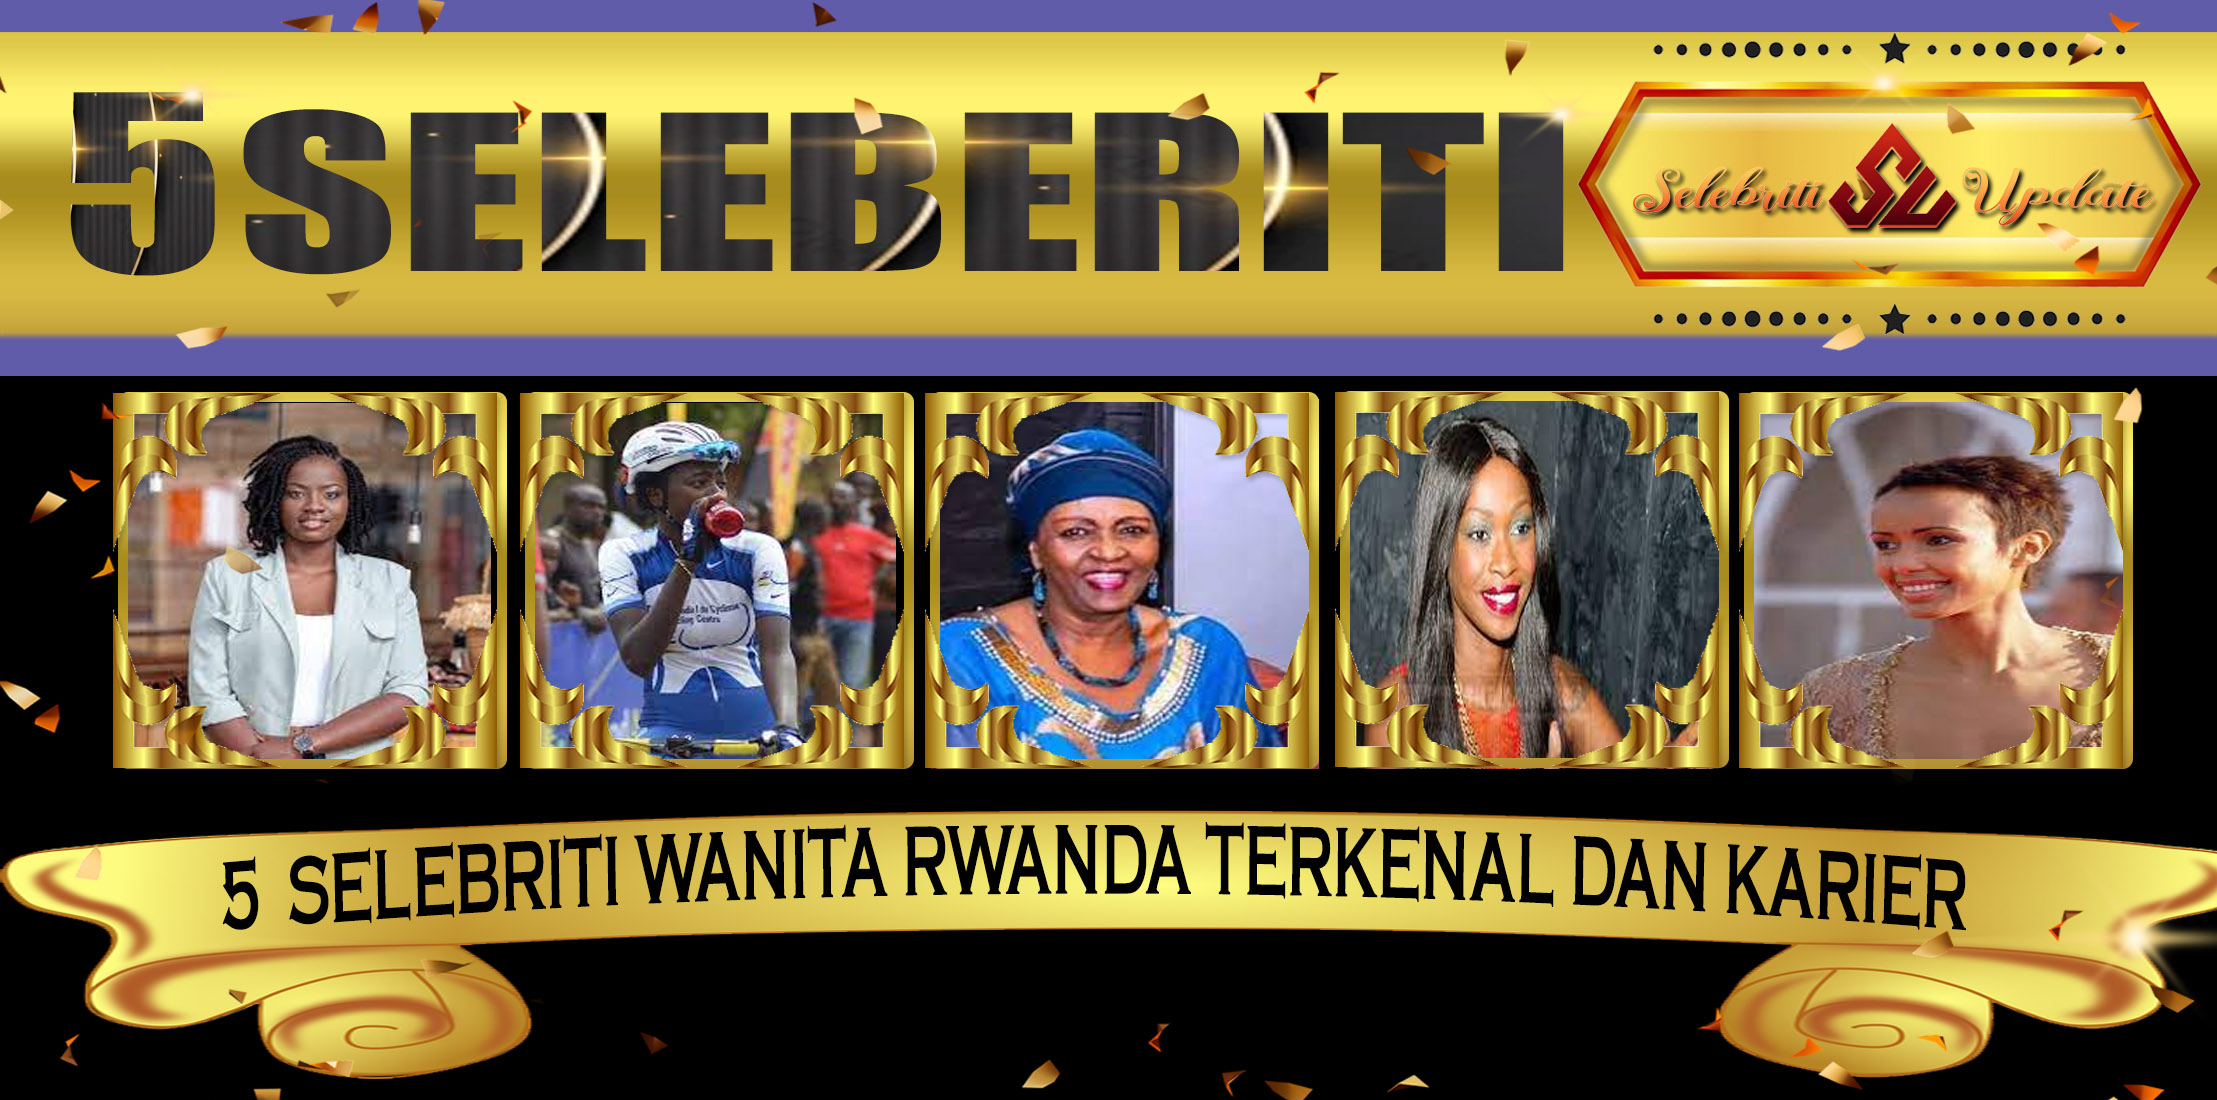 5 Selebriti Wanita Rwanda